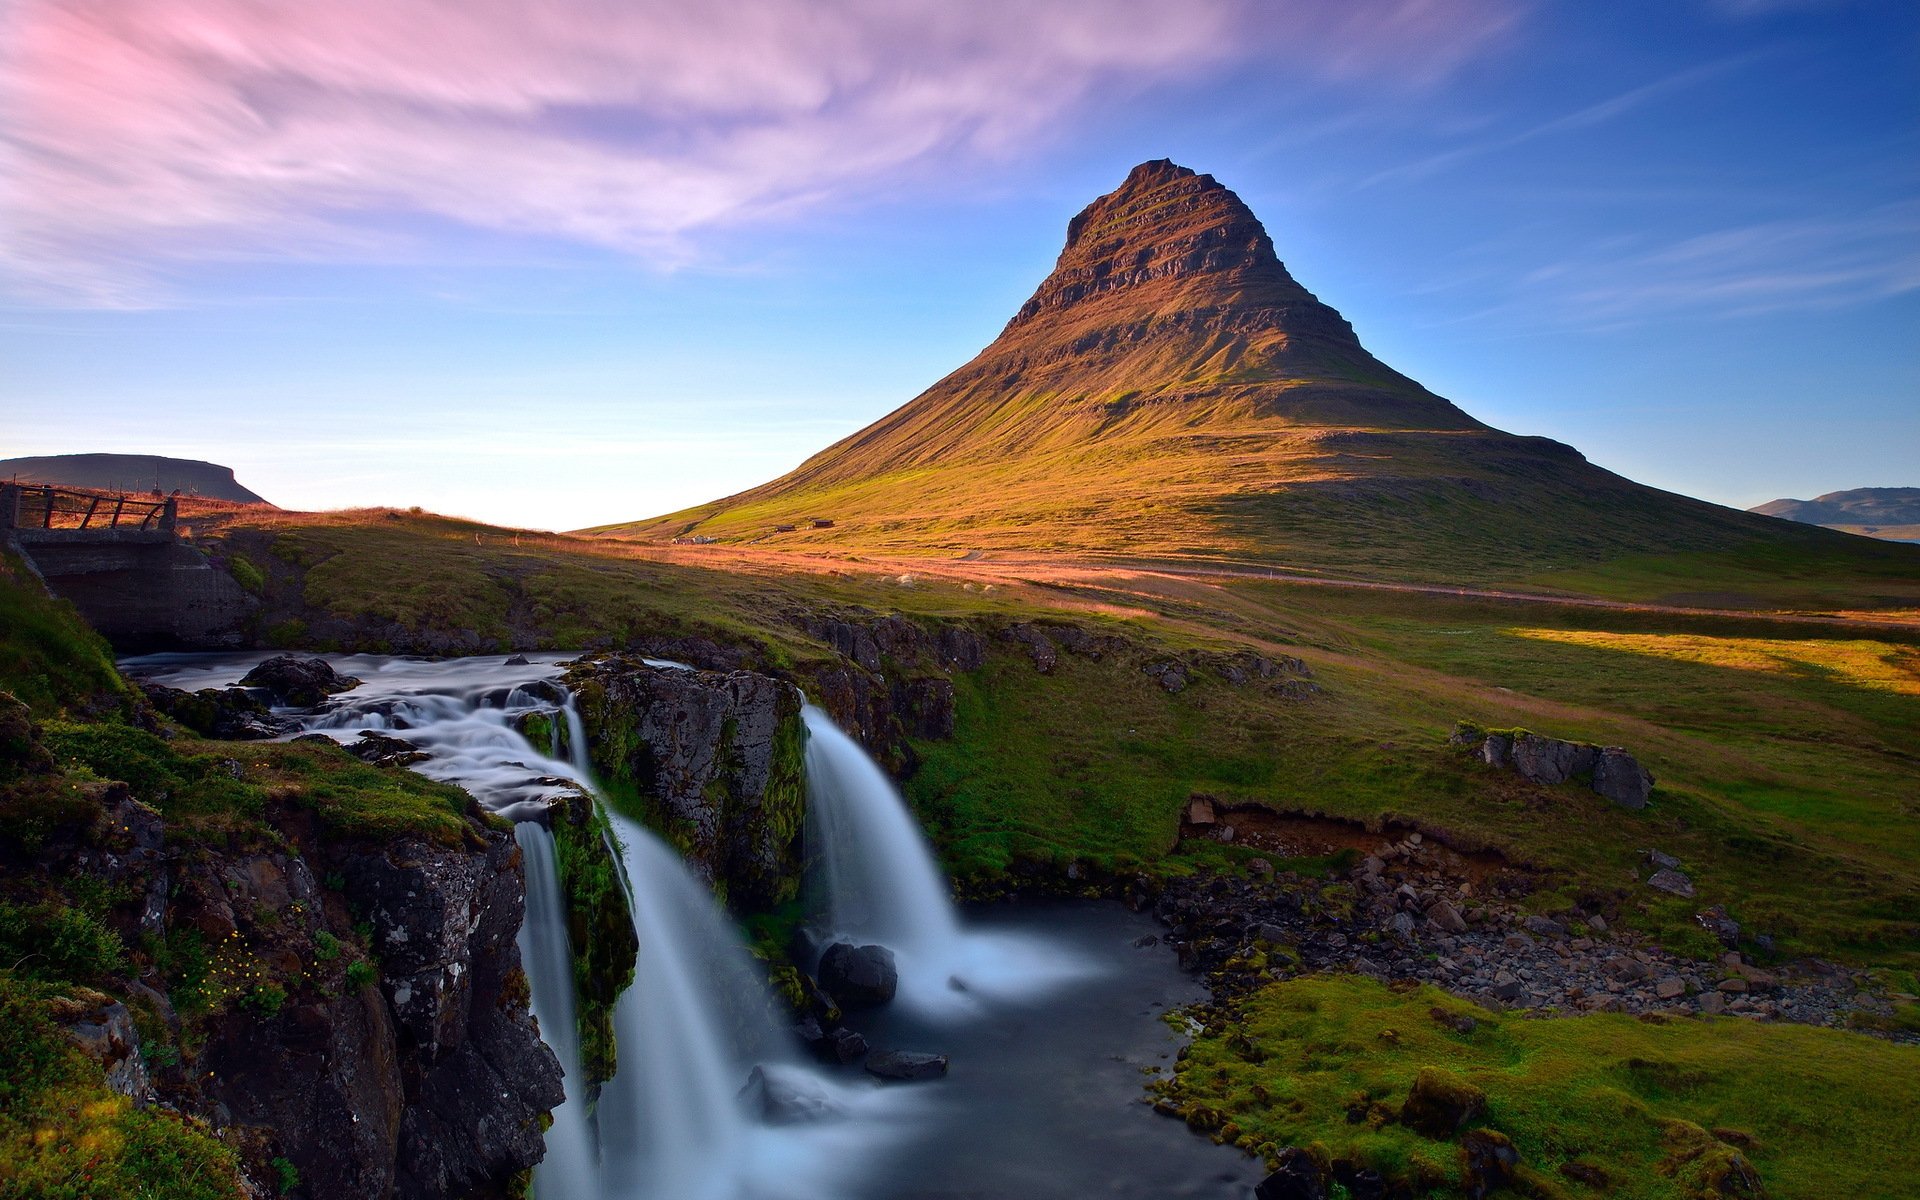 Kirkjufell là một ngọn núi nổi tiếng ở Iceland. Hình nền với phong cảnh tuyệt đẹp này sẽ khiến cho không gian làm việc của bạn trở nên thư giãn và yên tĩnh. Hãy để bầu không khí mát mẻ của Iceland lan tỏa trên màn hình máy tính của bạn.